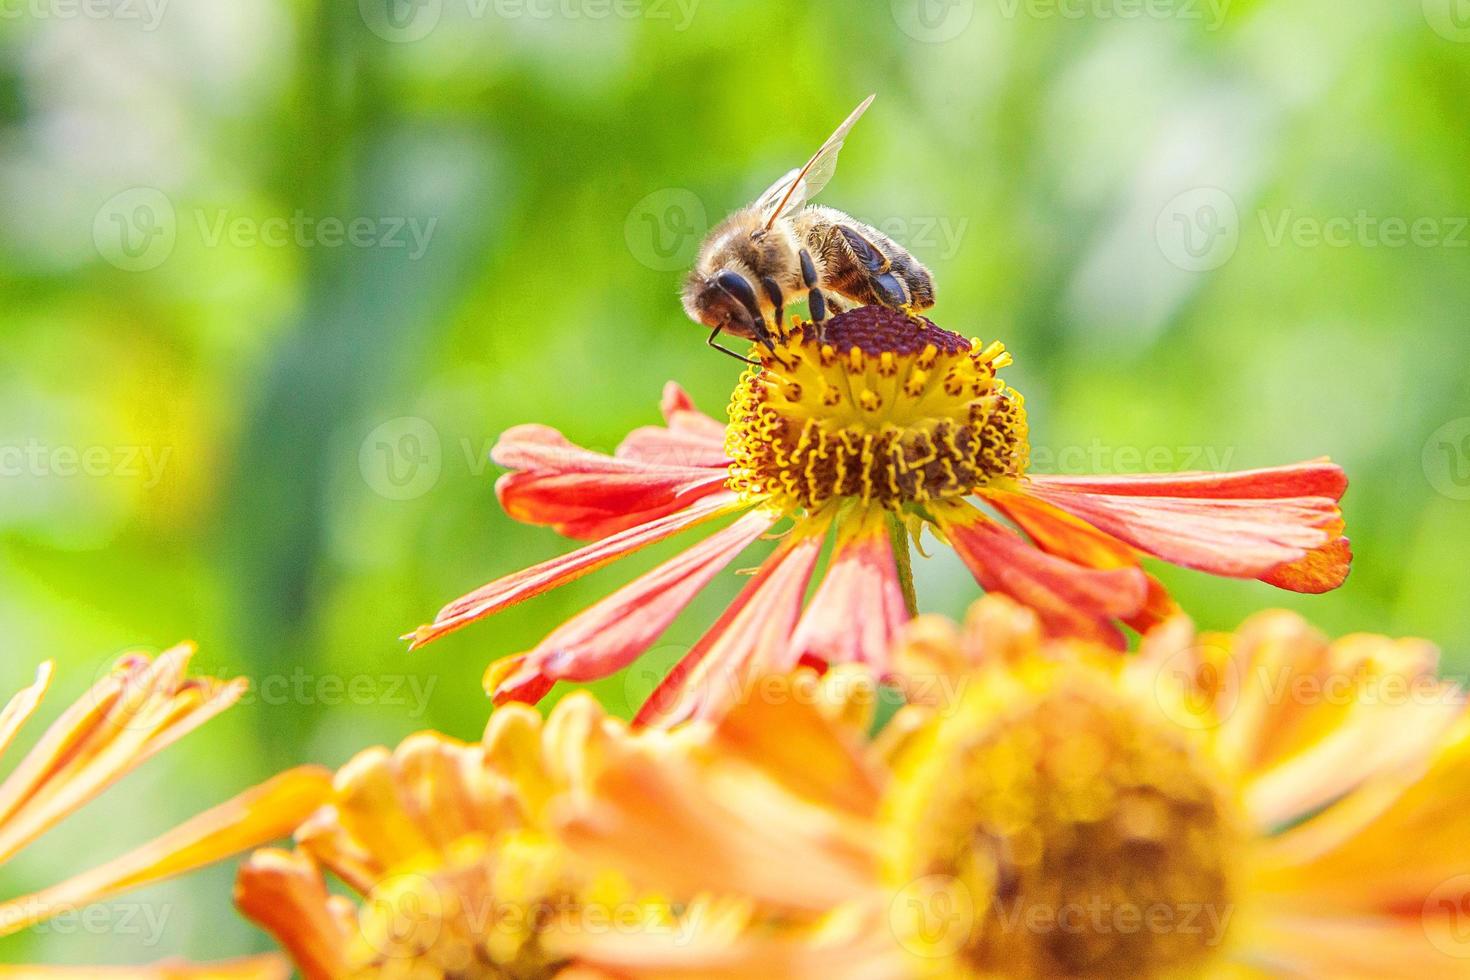 l'ape mellifera ricoperta di polline giallo beve il nettare, impollinando il fiore d'arancio. ispirazione floreale naturale primaverile o estivo in fiore giardino o parco sfondo. vita degli insetti. macro da vicino. foto